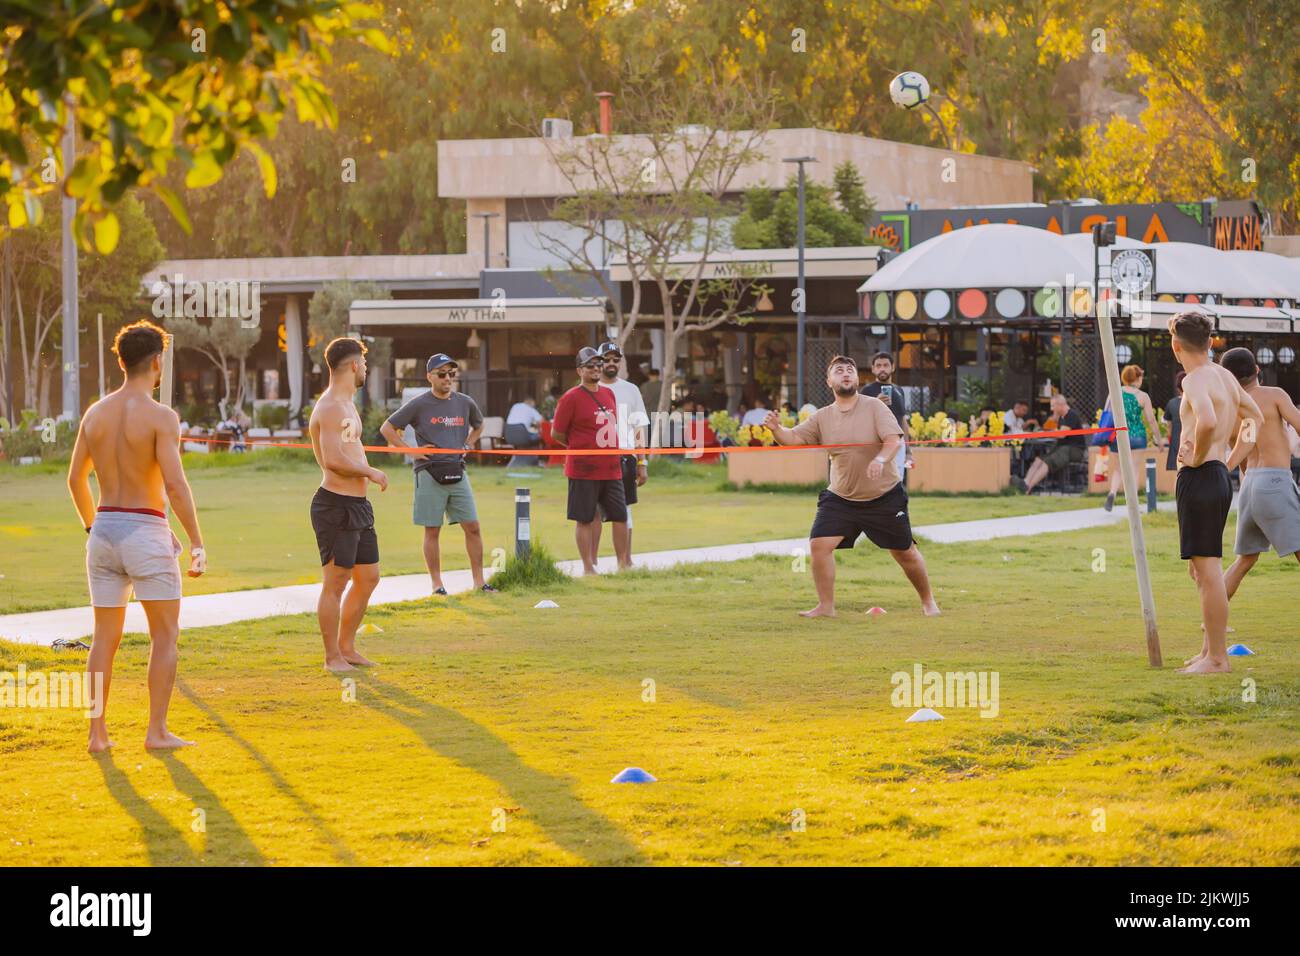 17 de junio de 2022, Antalya, Turquía: La gente se divierte mientras juega al voleibol de pie pateando en una hierba. Deporte malasio del sepaktakraw Foto de stock